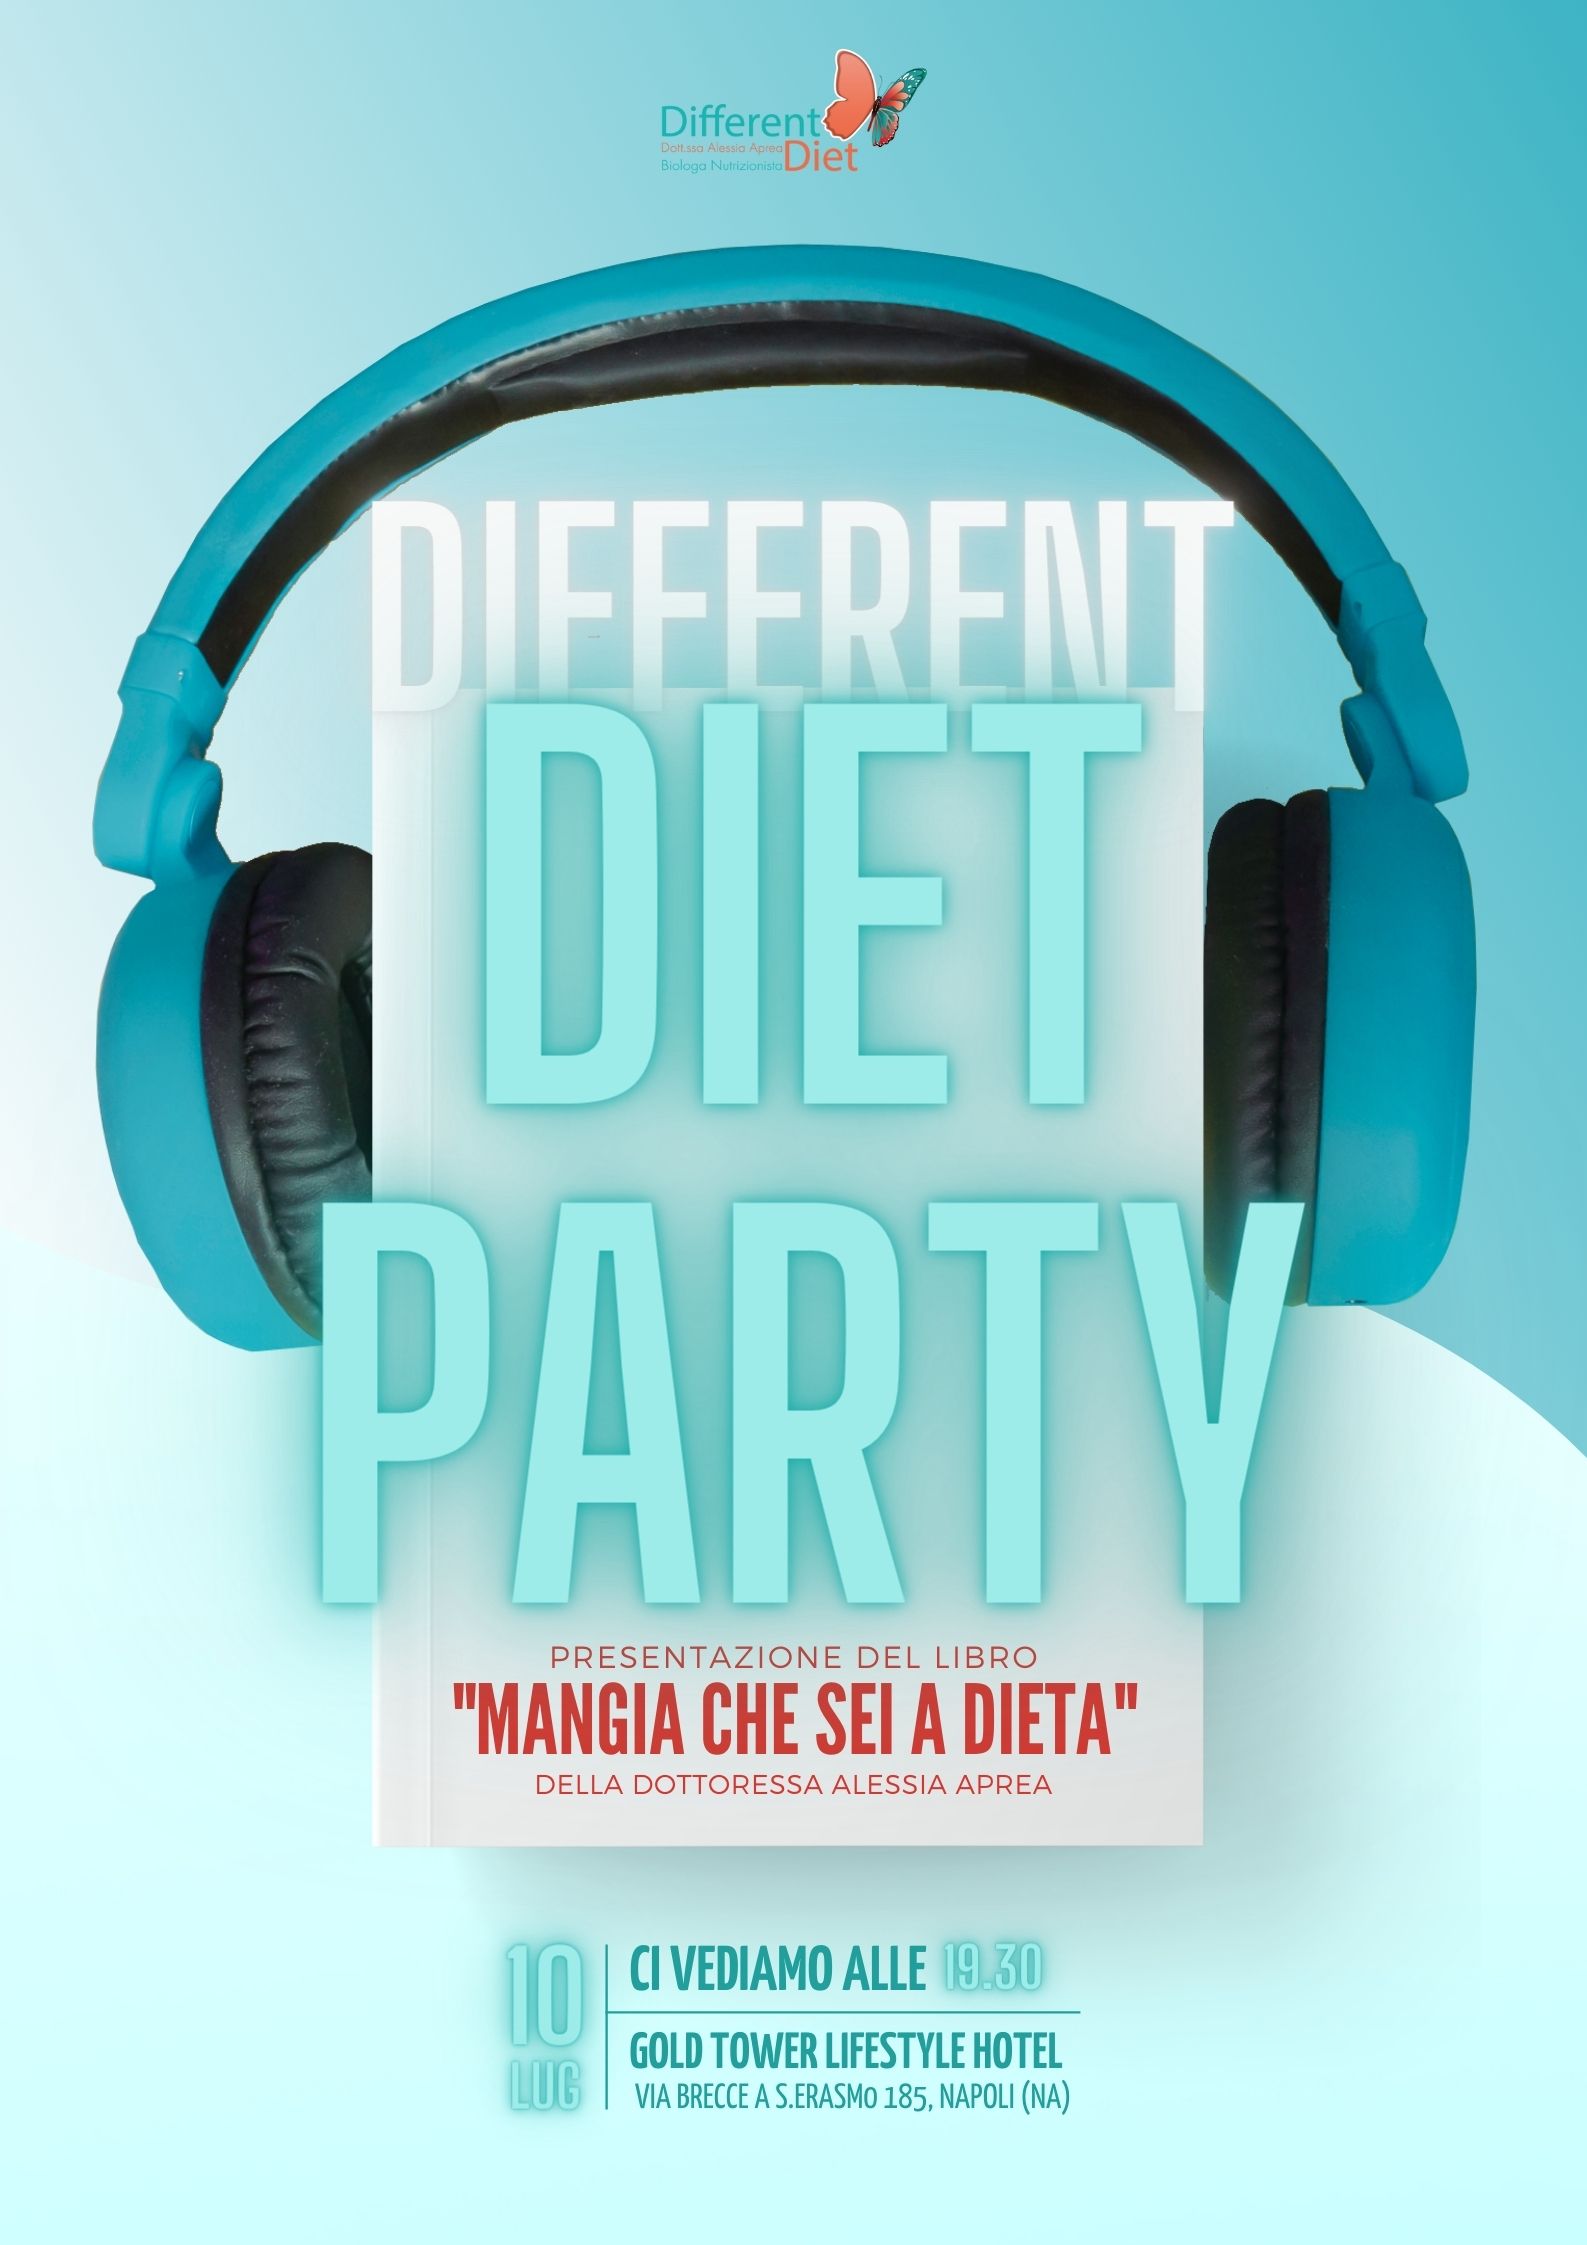 Foto 1 - Non diete, ma sana alimentazione è il motivo del “Different Diet Party”